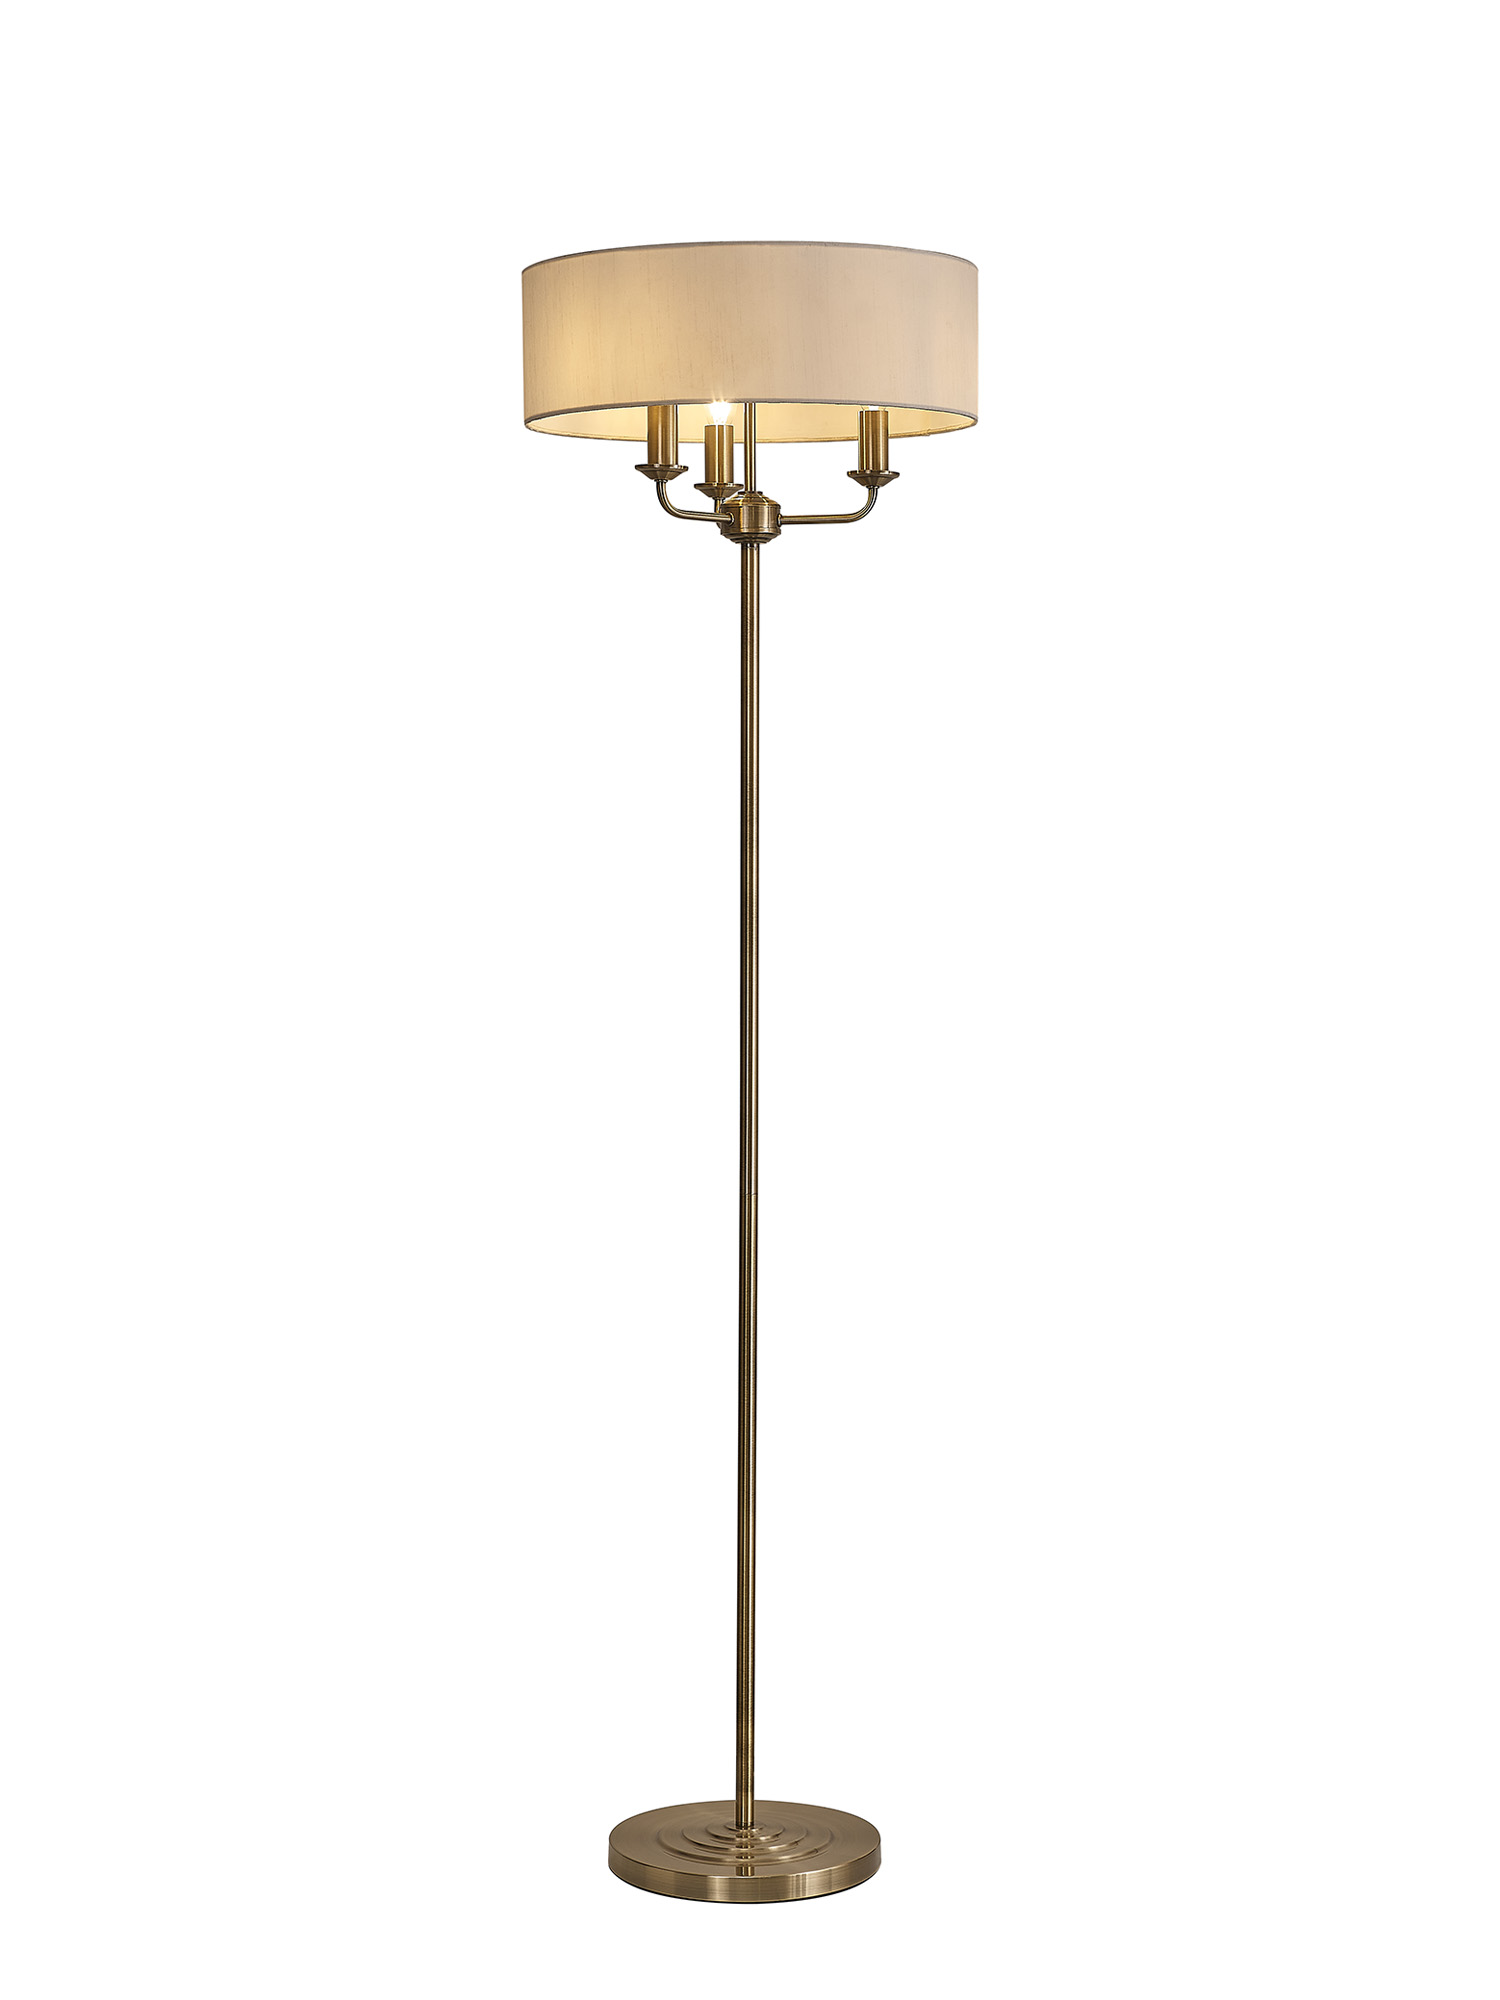 DK0901  Banyan 45cm 3 Light Floor Lamp Antique Brass; White